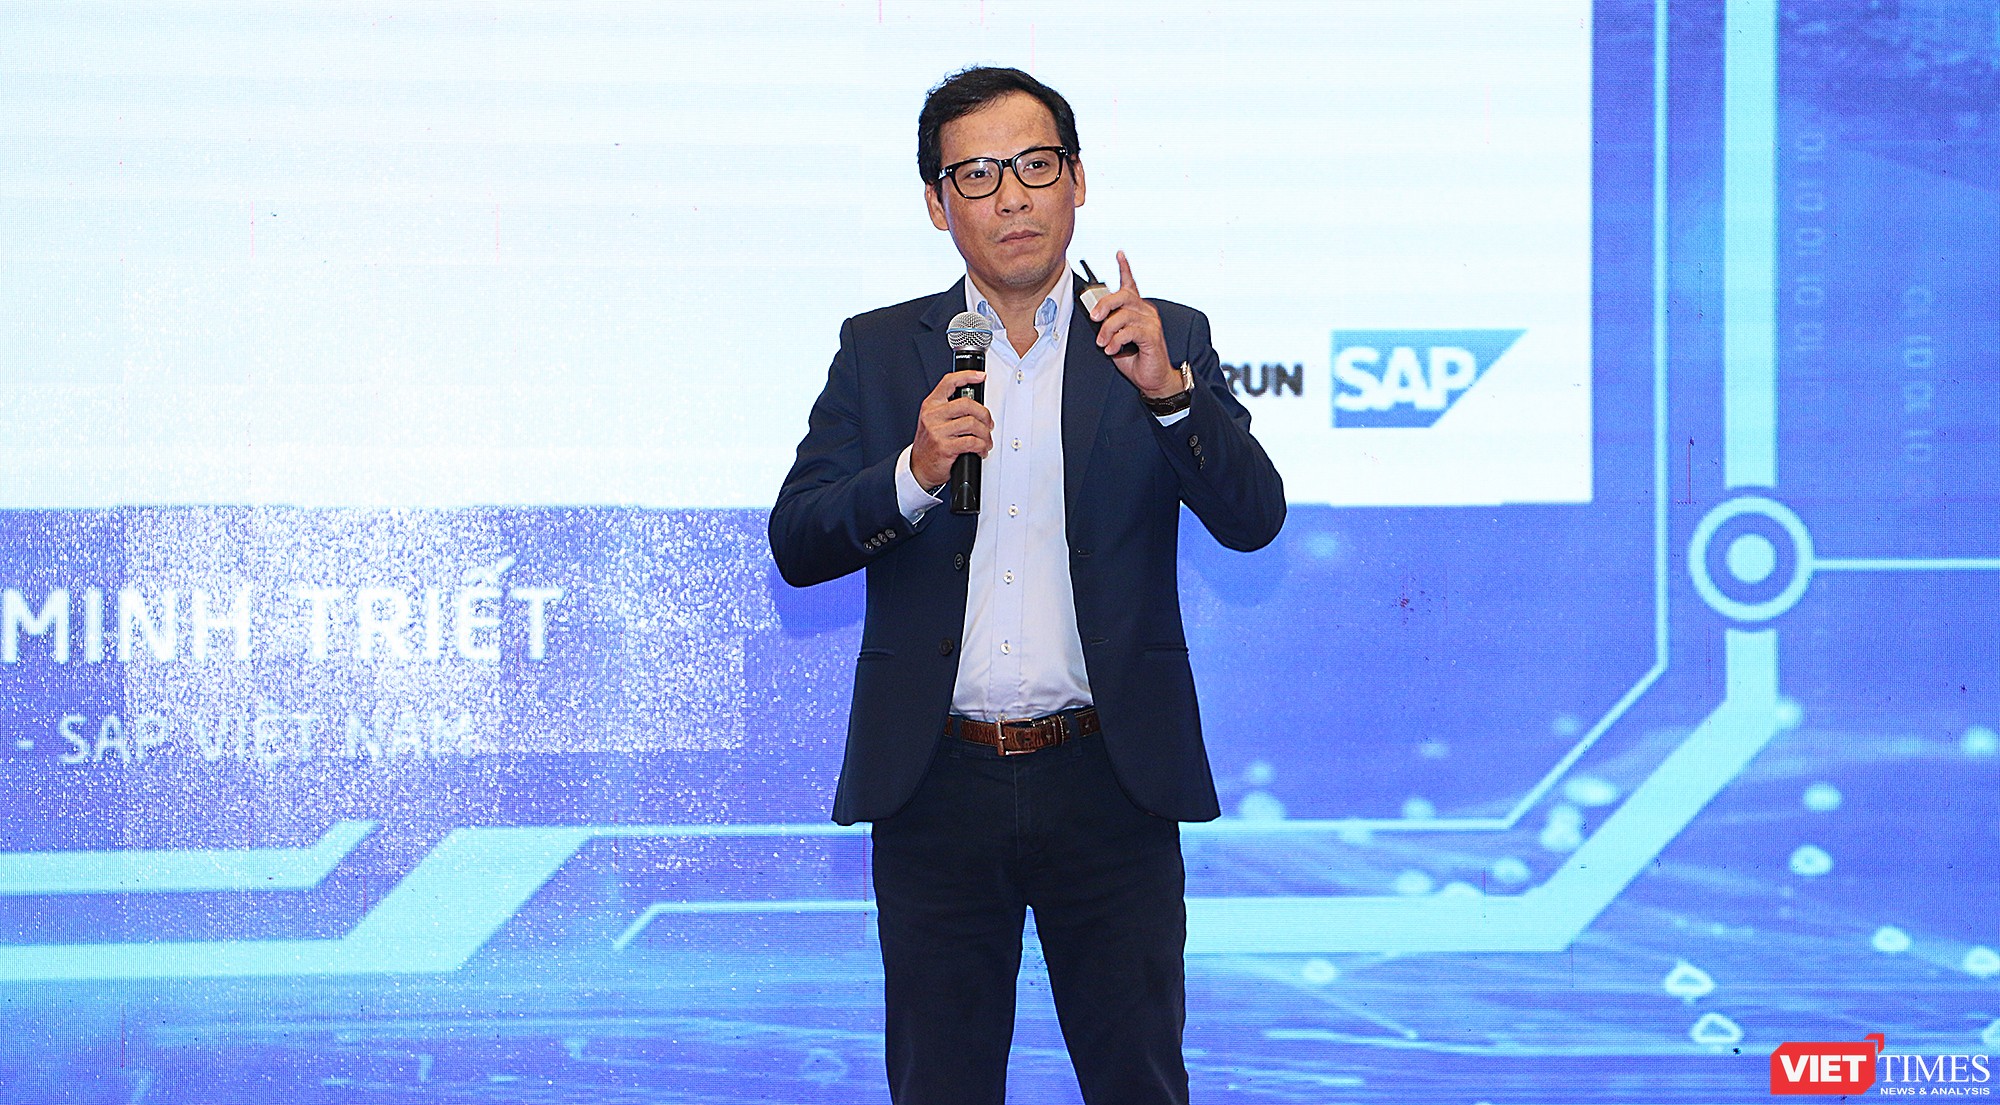 Ông Trần Tịnh Minh Triết, Giám đốc giải pháp SAP Việt Nam: Dữ liệu là trái tim của chuyển đổi số!